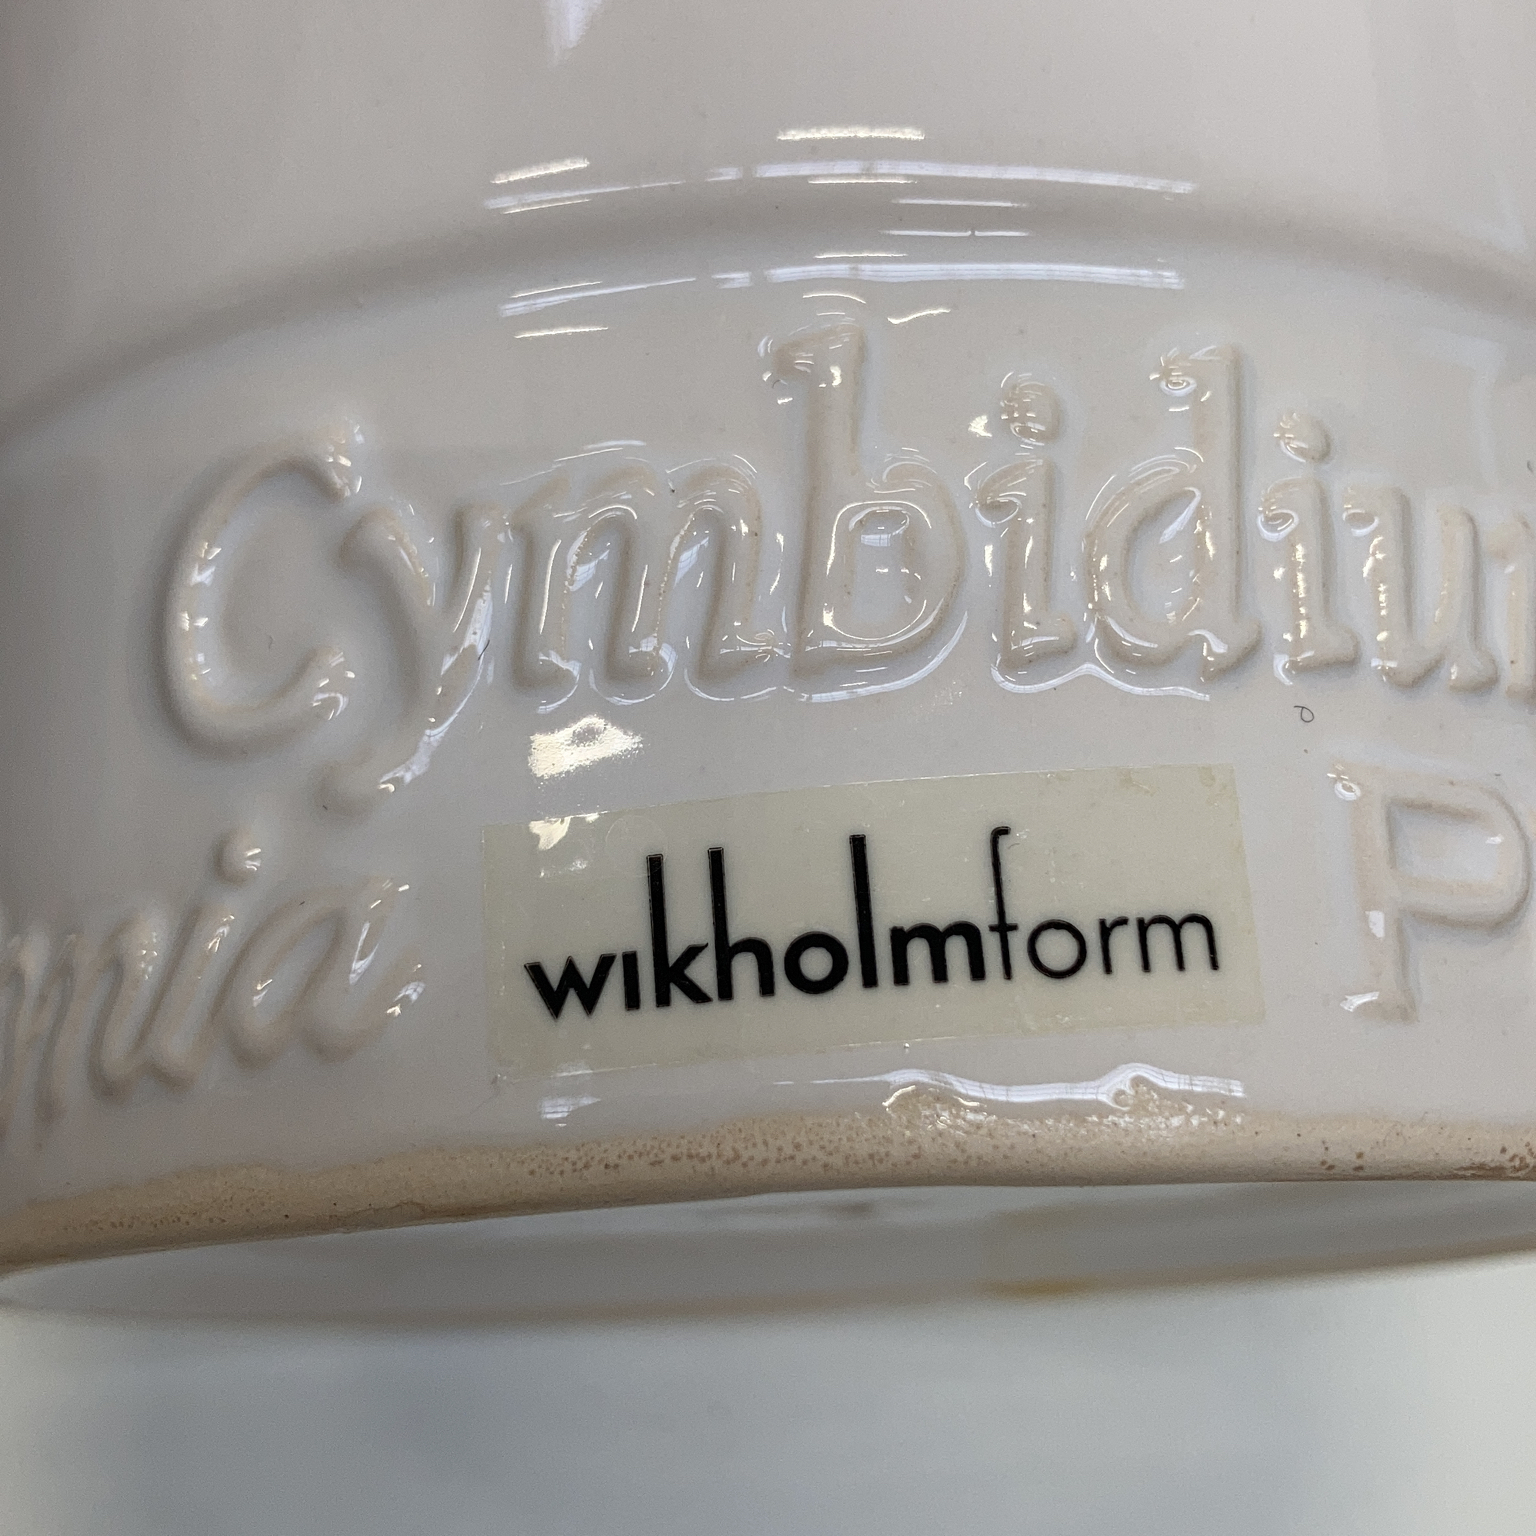 Wikholm form